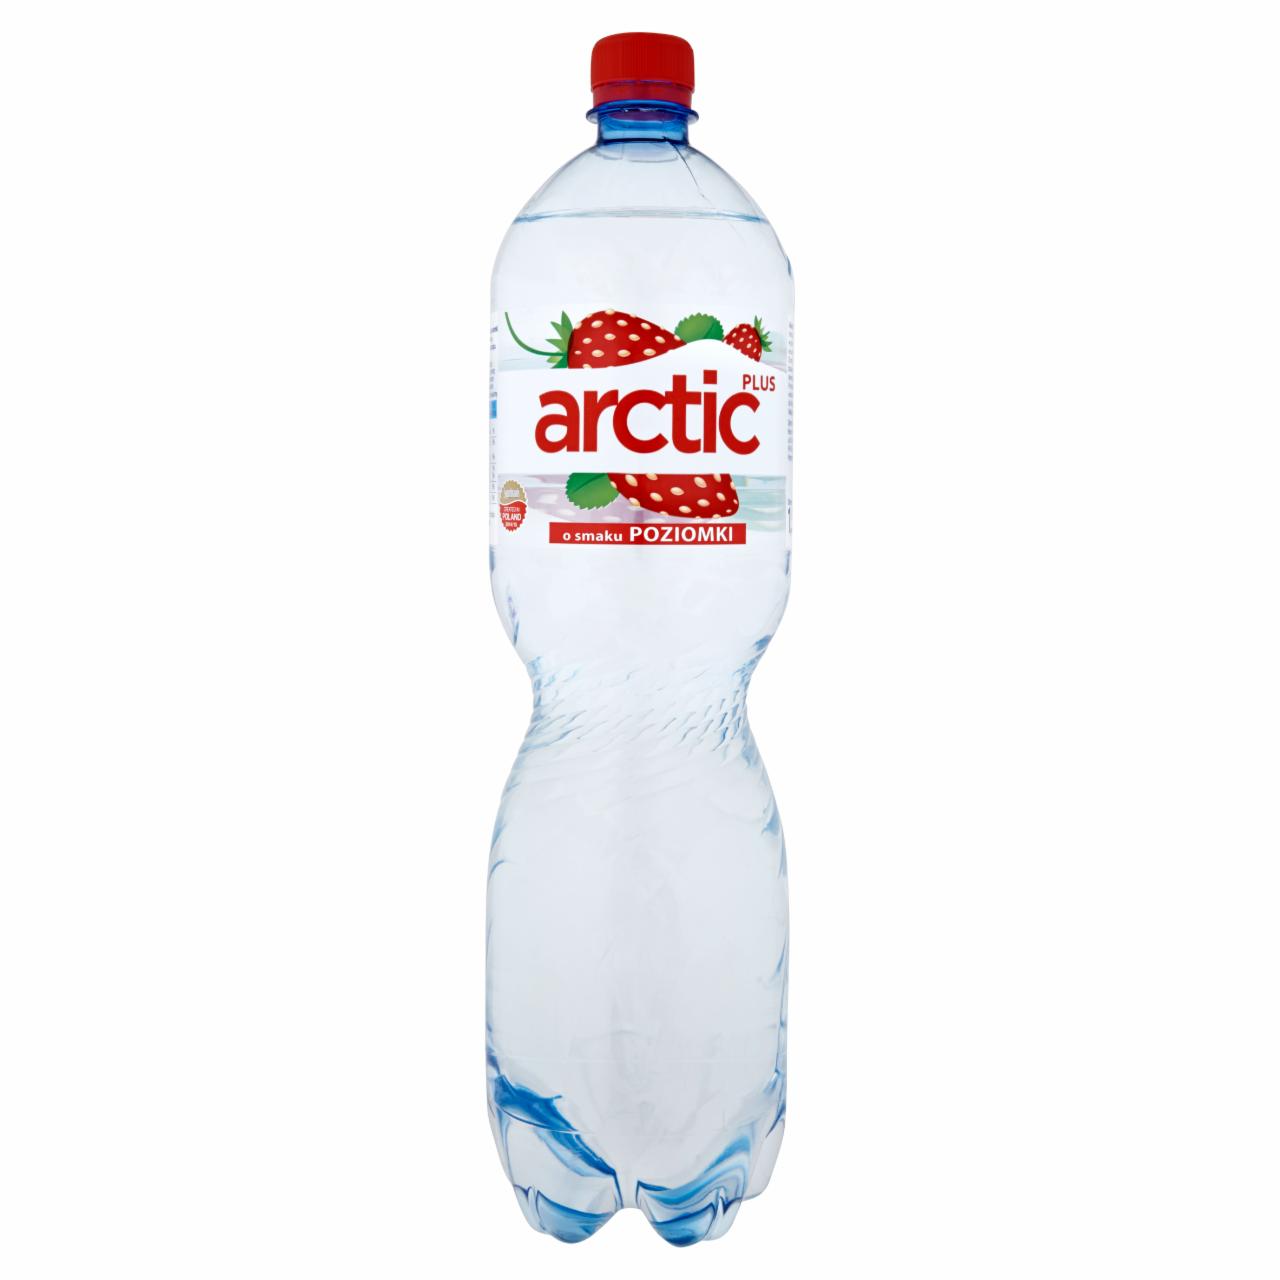 Zdjęcia - Arctic Plus o smaku poziomki Napój niegazowany 1,5 l